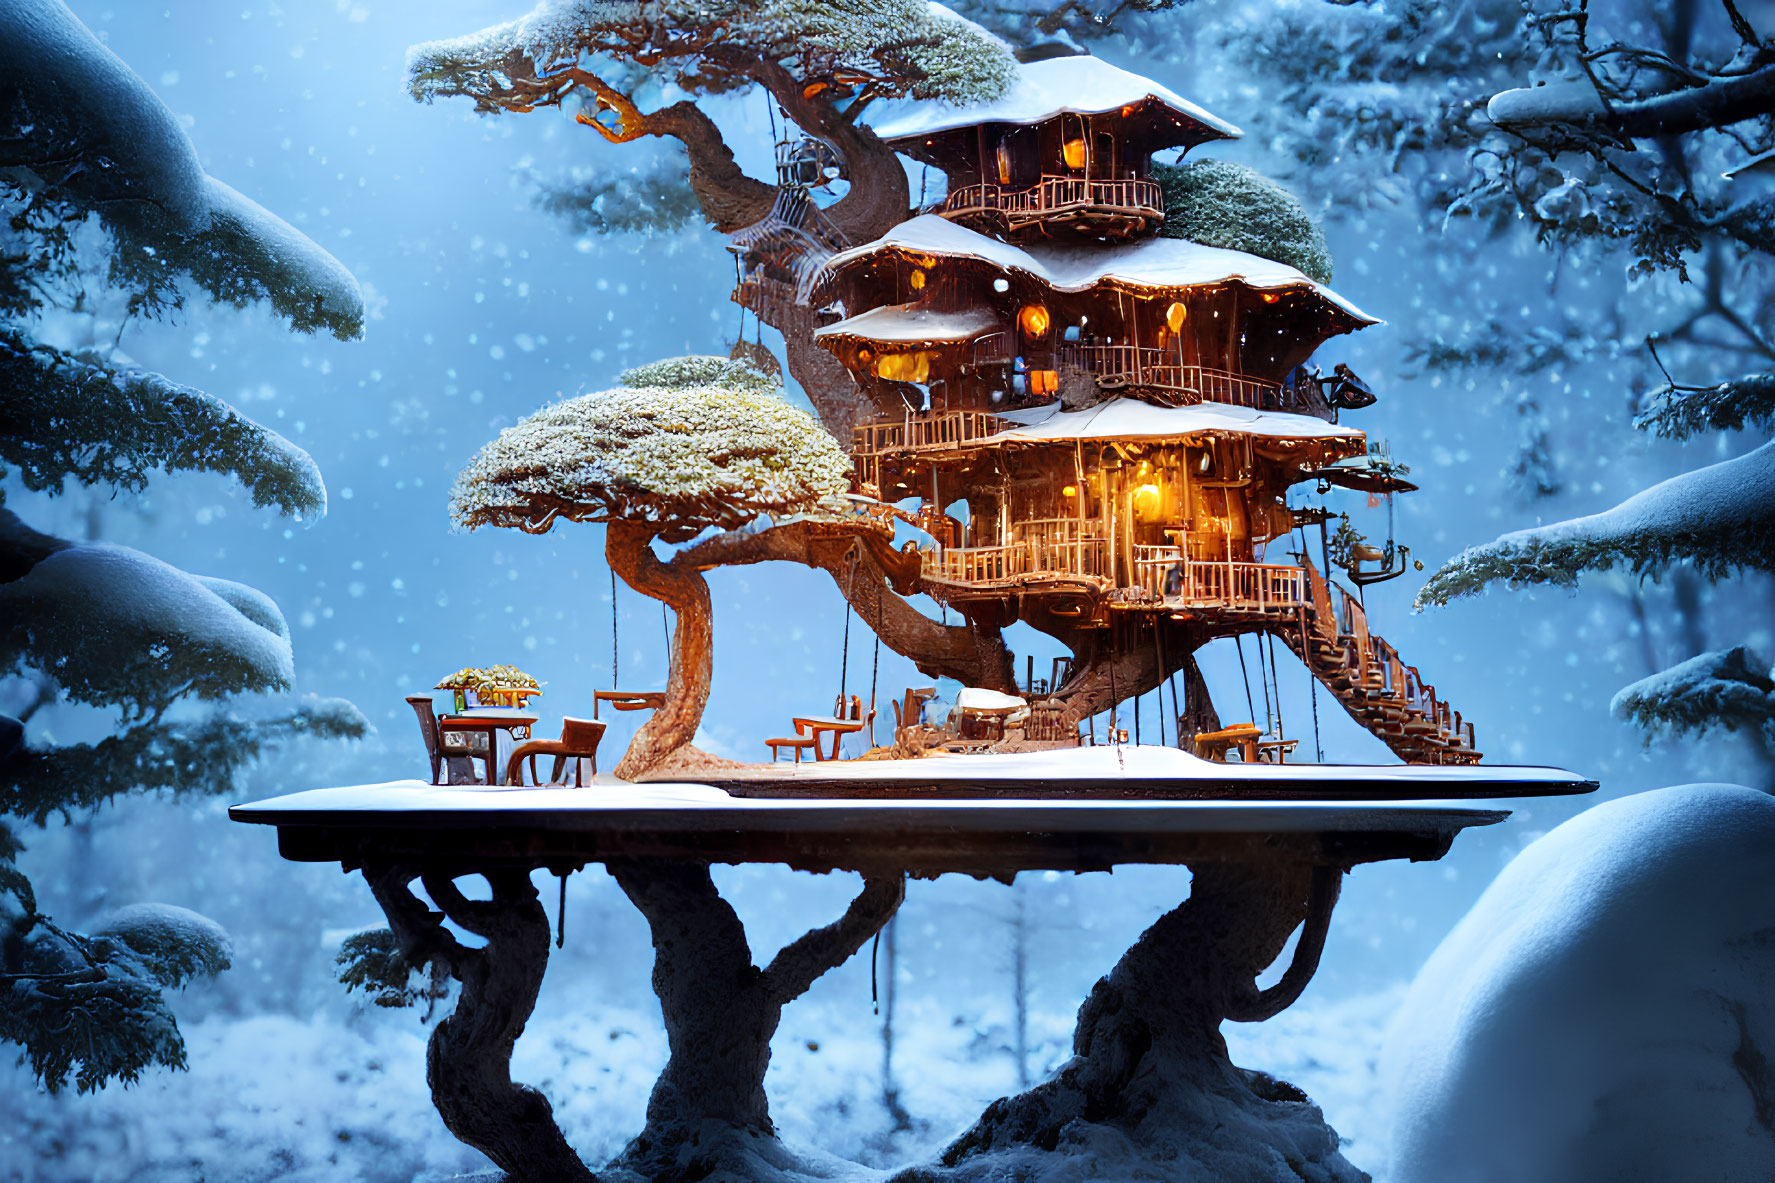 Snowy multi-level treehouse in serene winter landscape